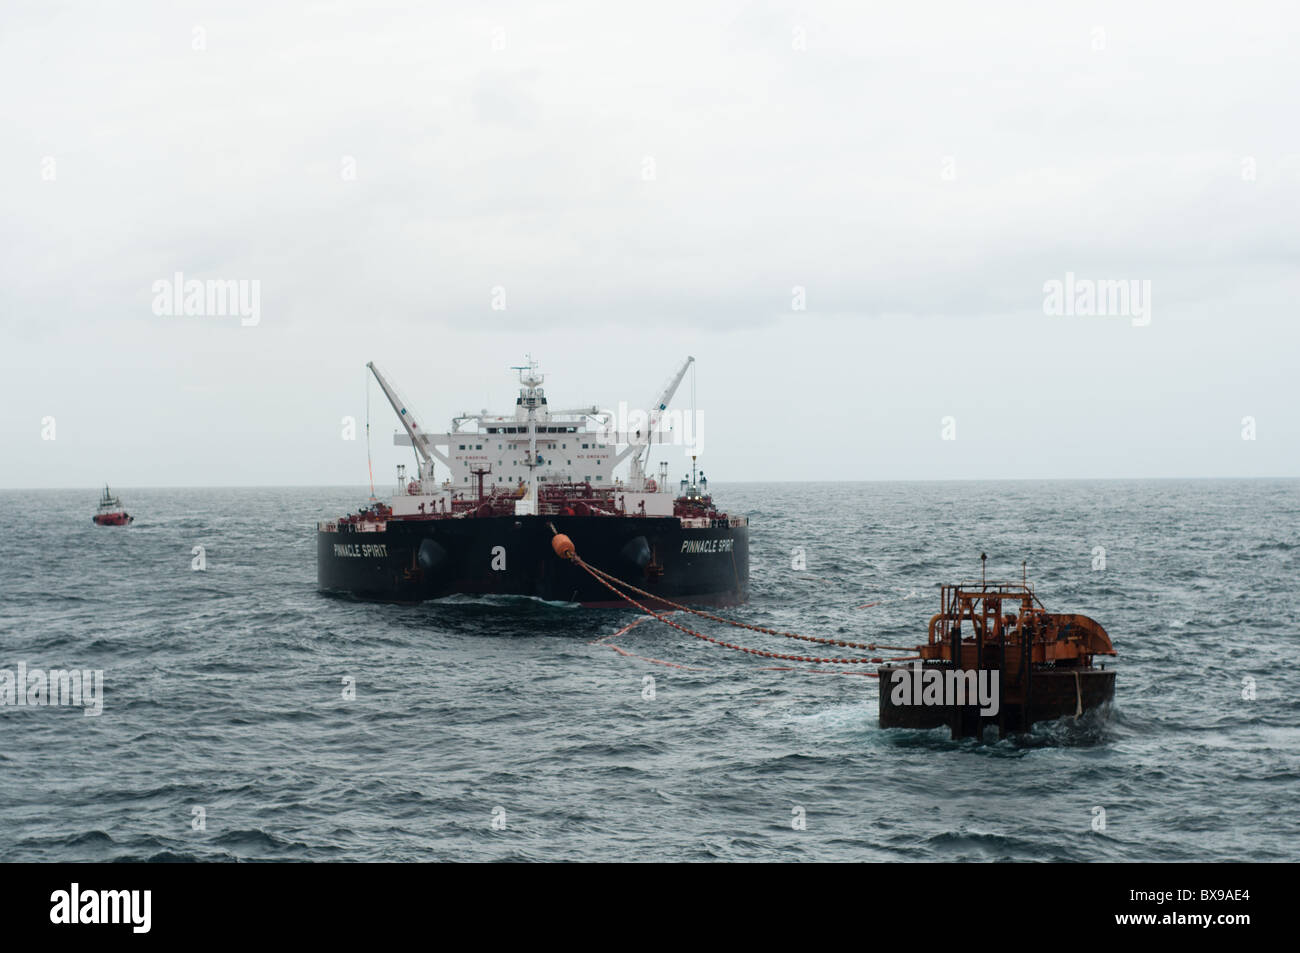 Oil Tanker navire ancré dans la zone au large des côtes en attente d'être chargés par une plate-forme pétrolière de production de Petrobras, la compagnie pétrolière brésilienne. Banque D'Images